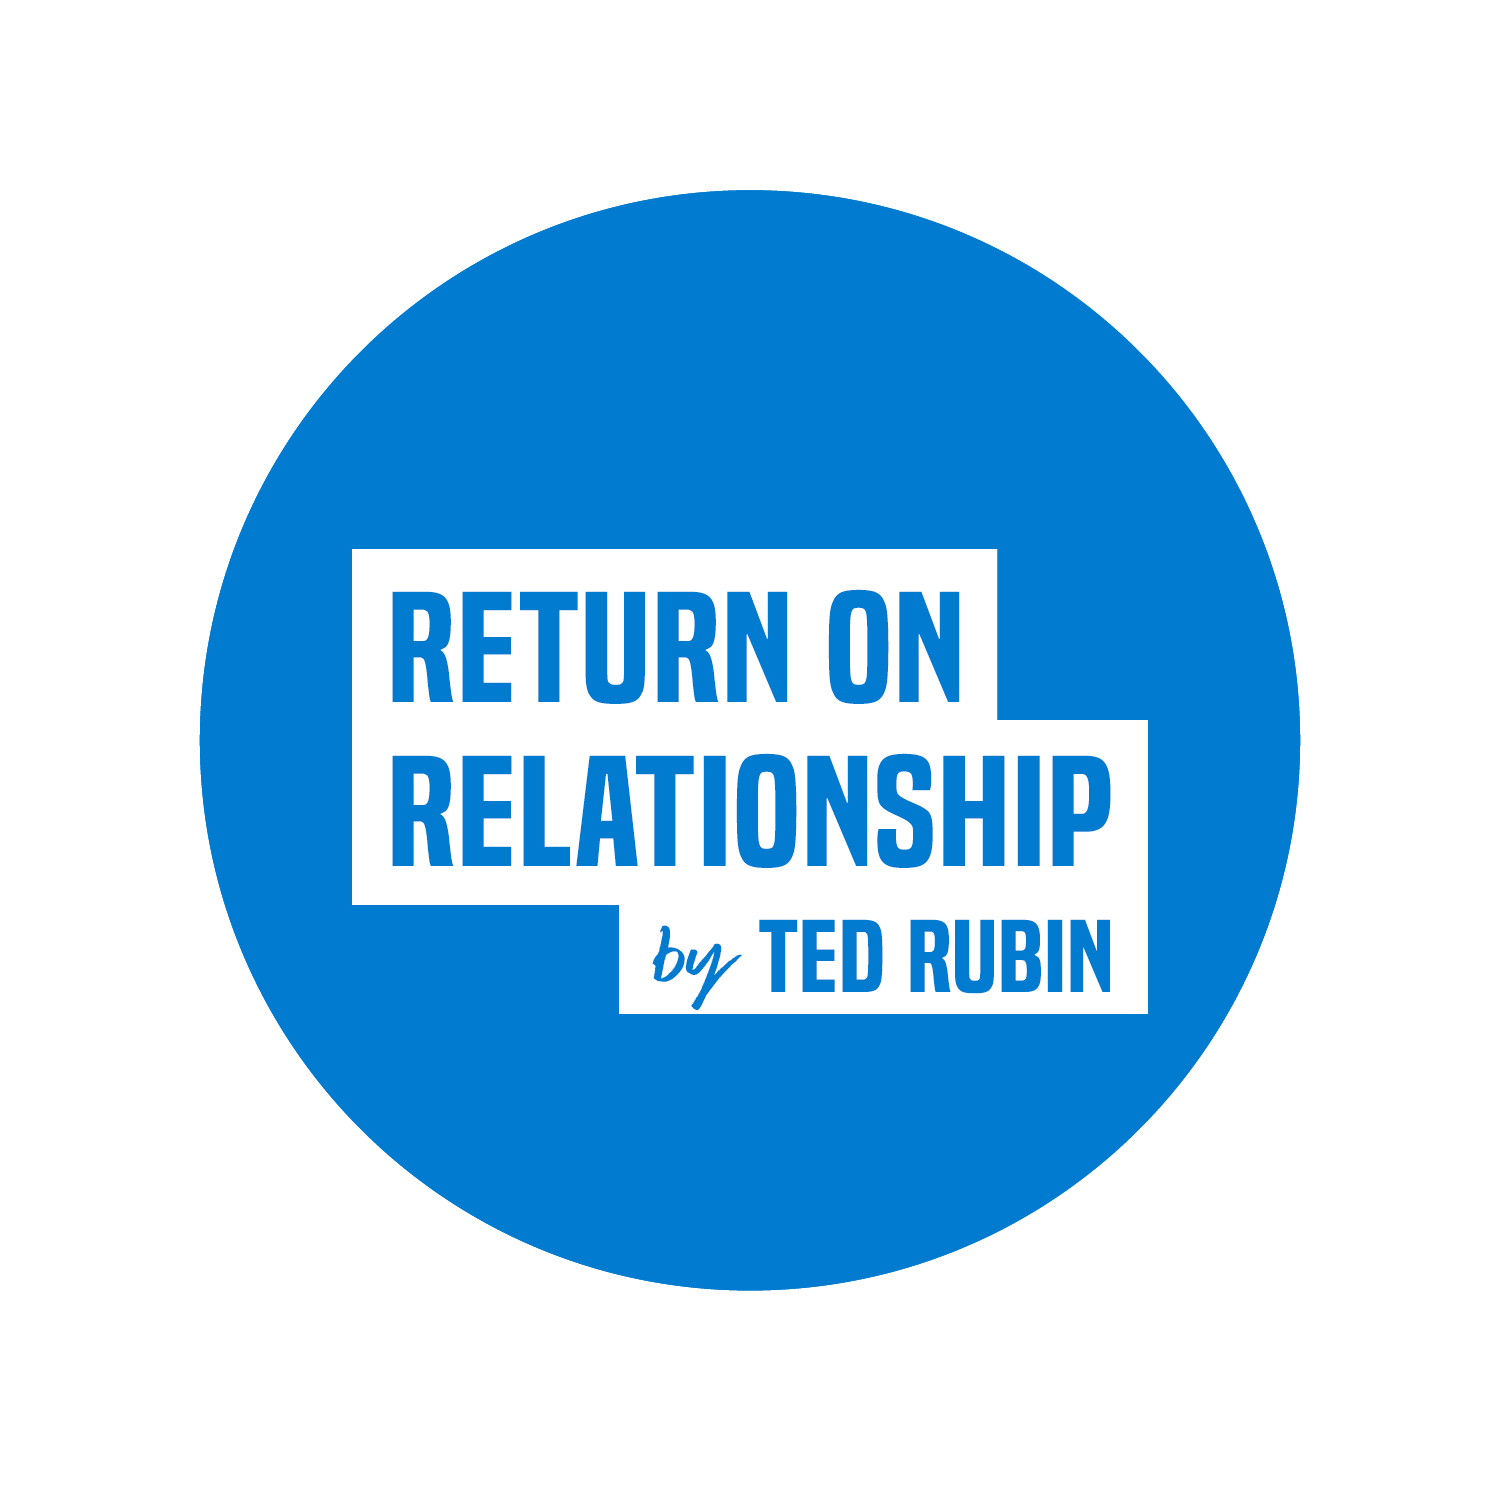 Ted Rubin